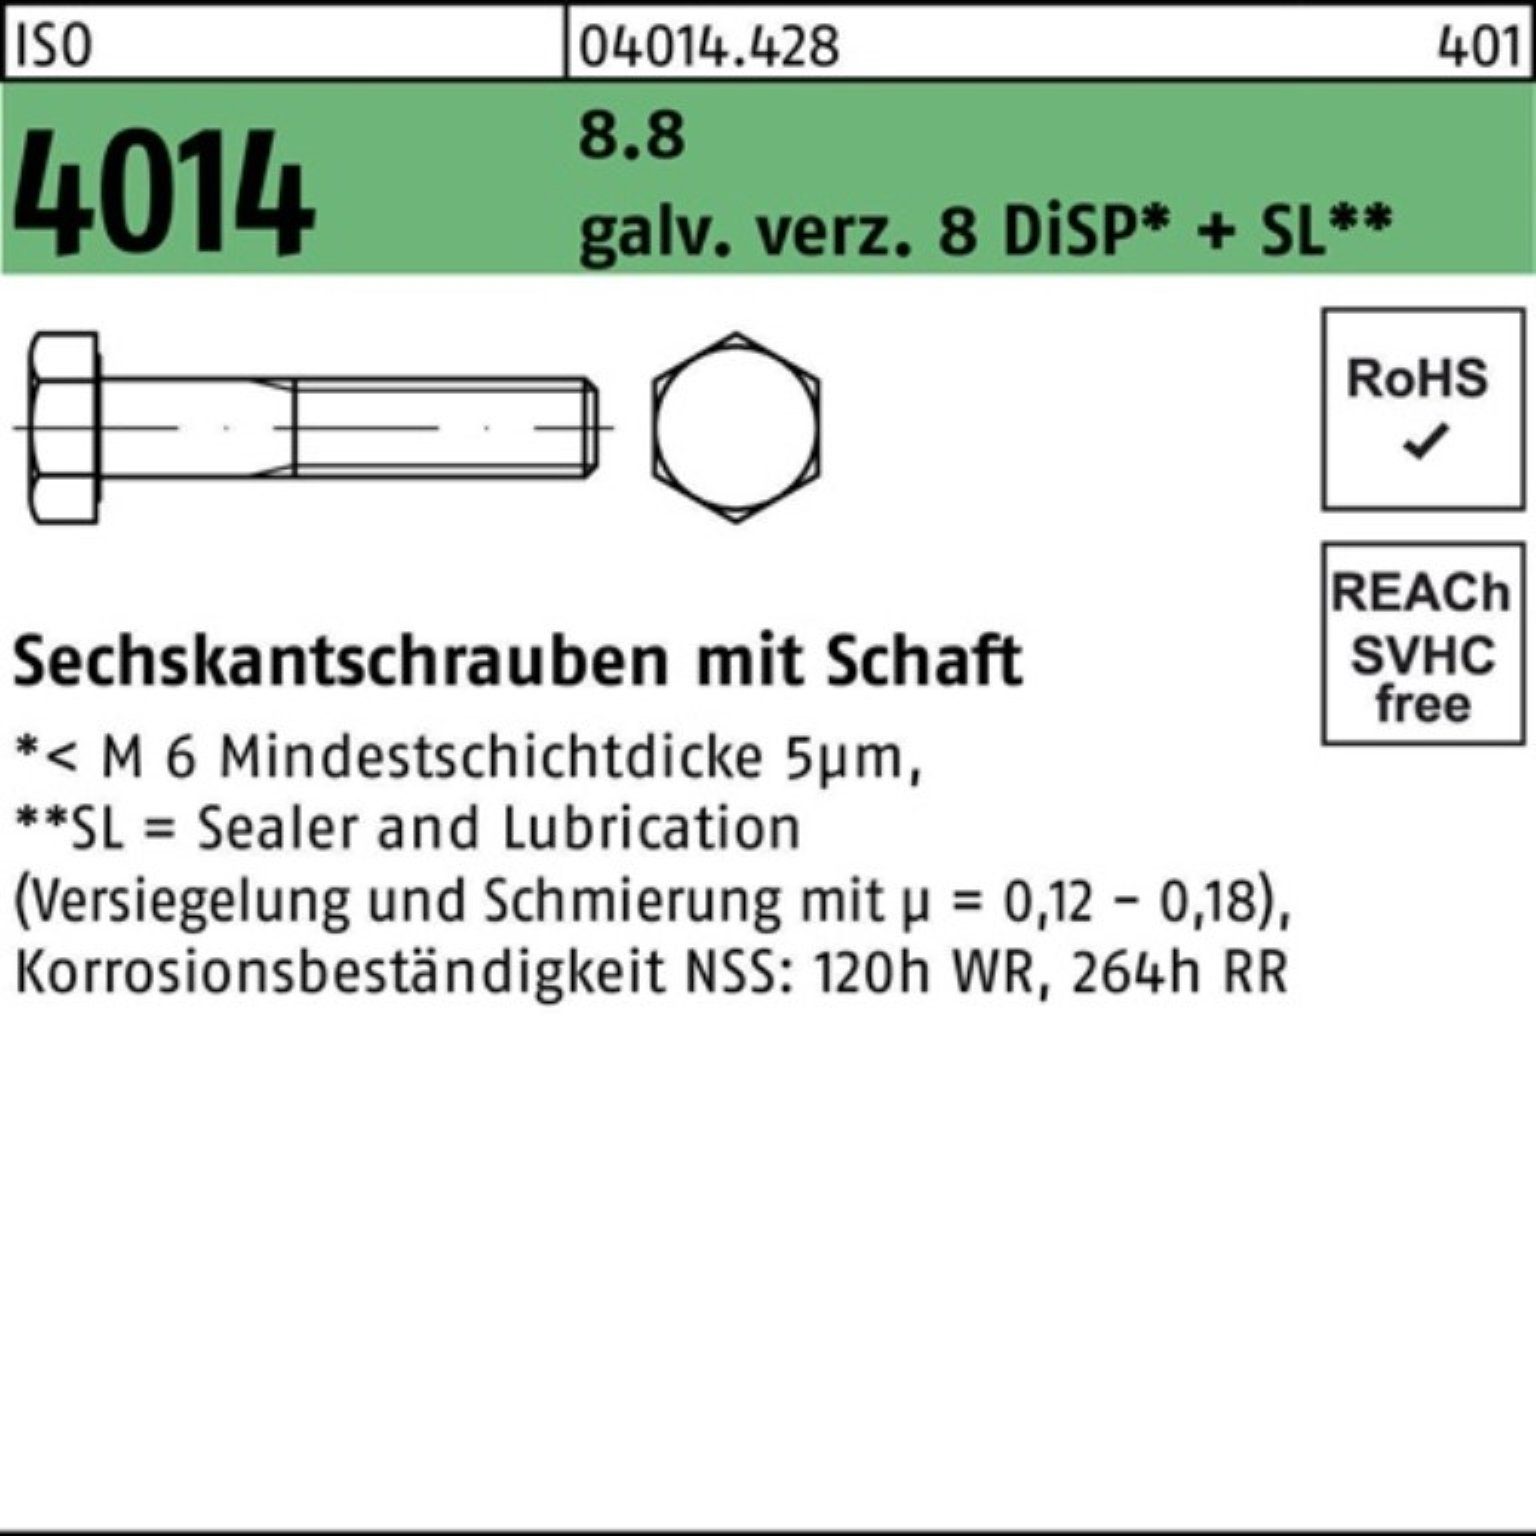 Bufab Sechskantschraube 100er Pack Sechskantschraube ISO 4014 Schaft M12x100 8.8 galv.verz. 8